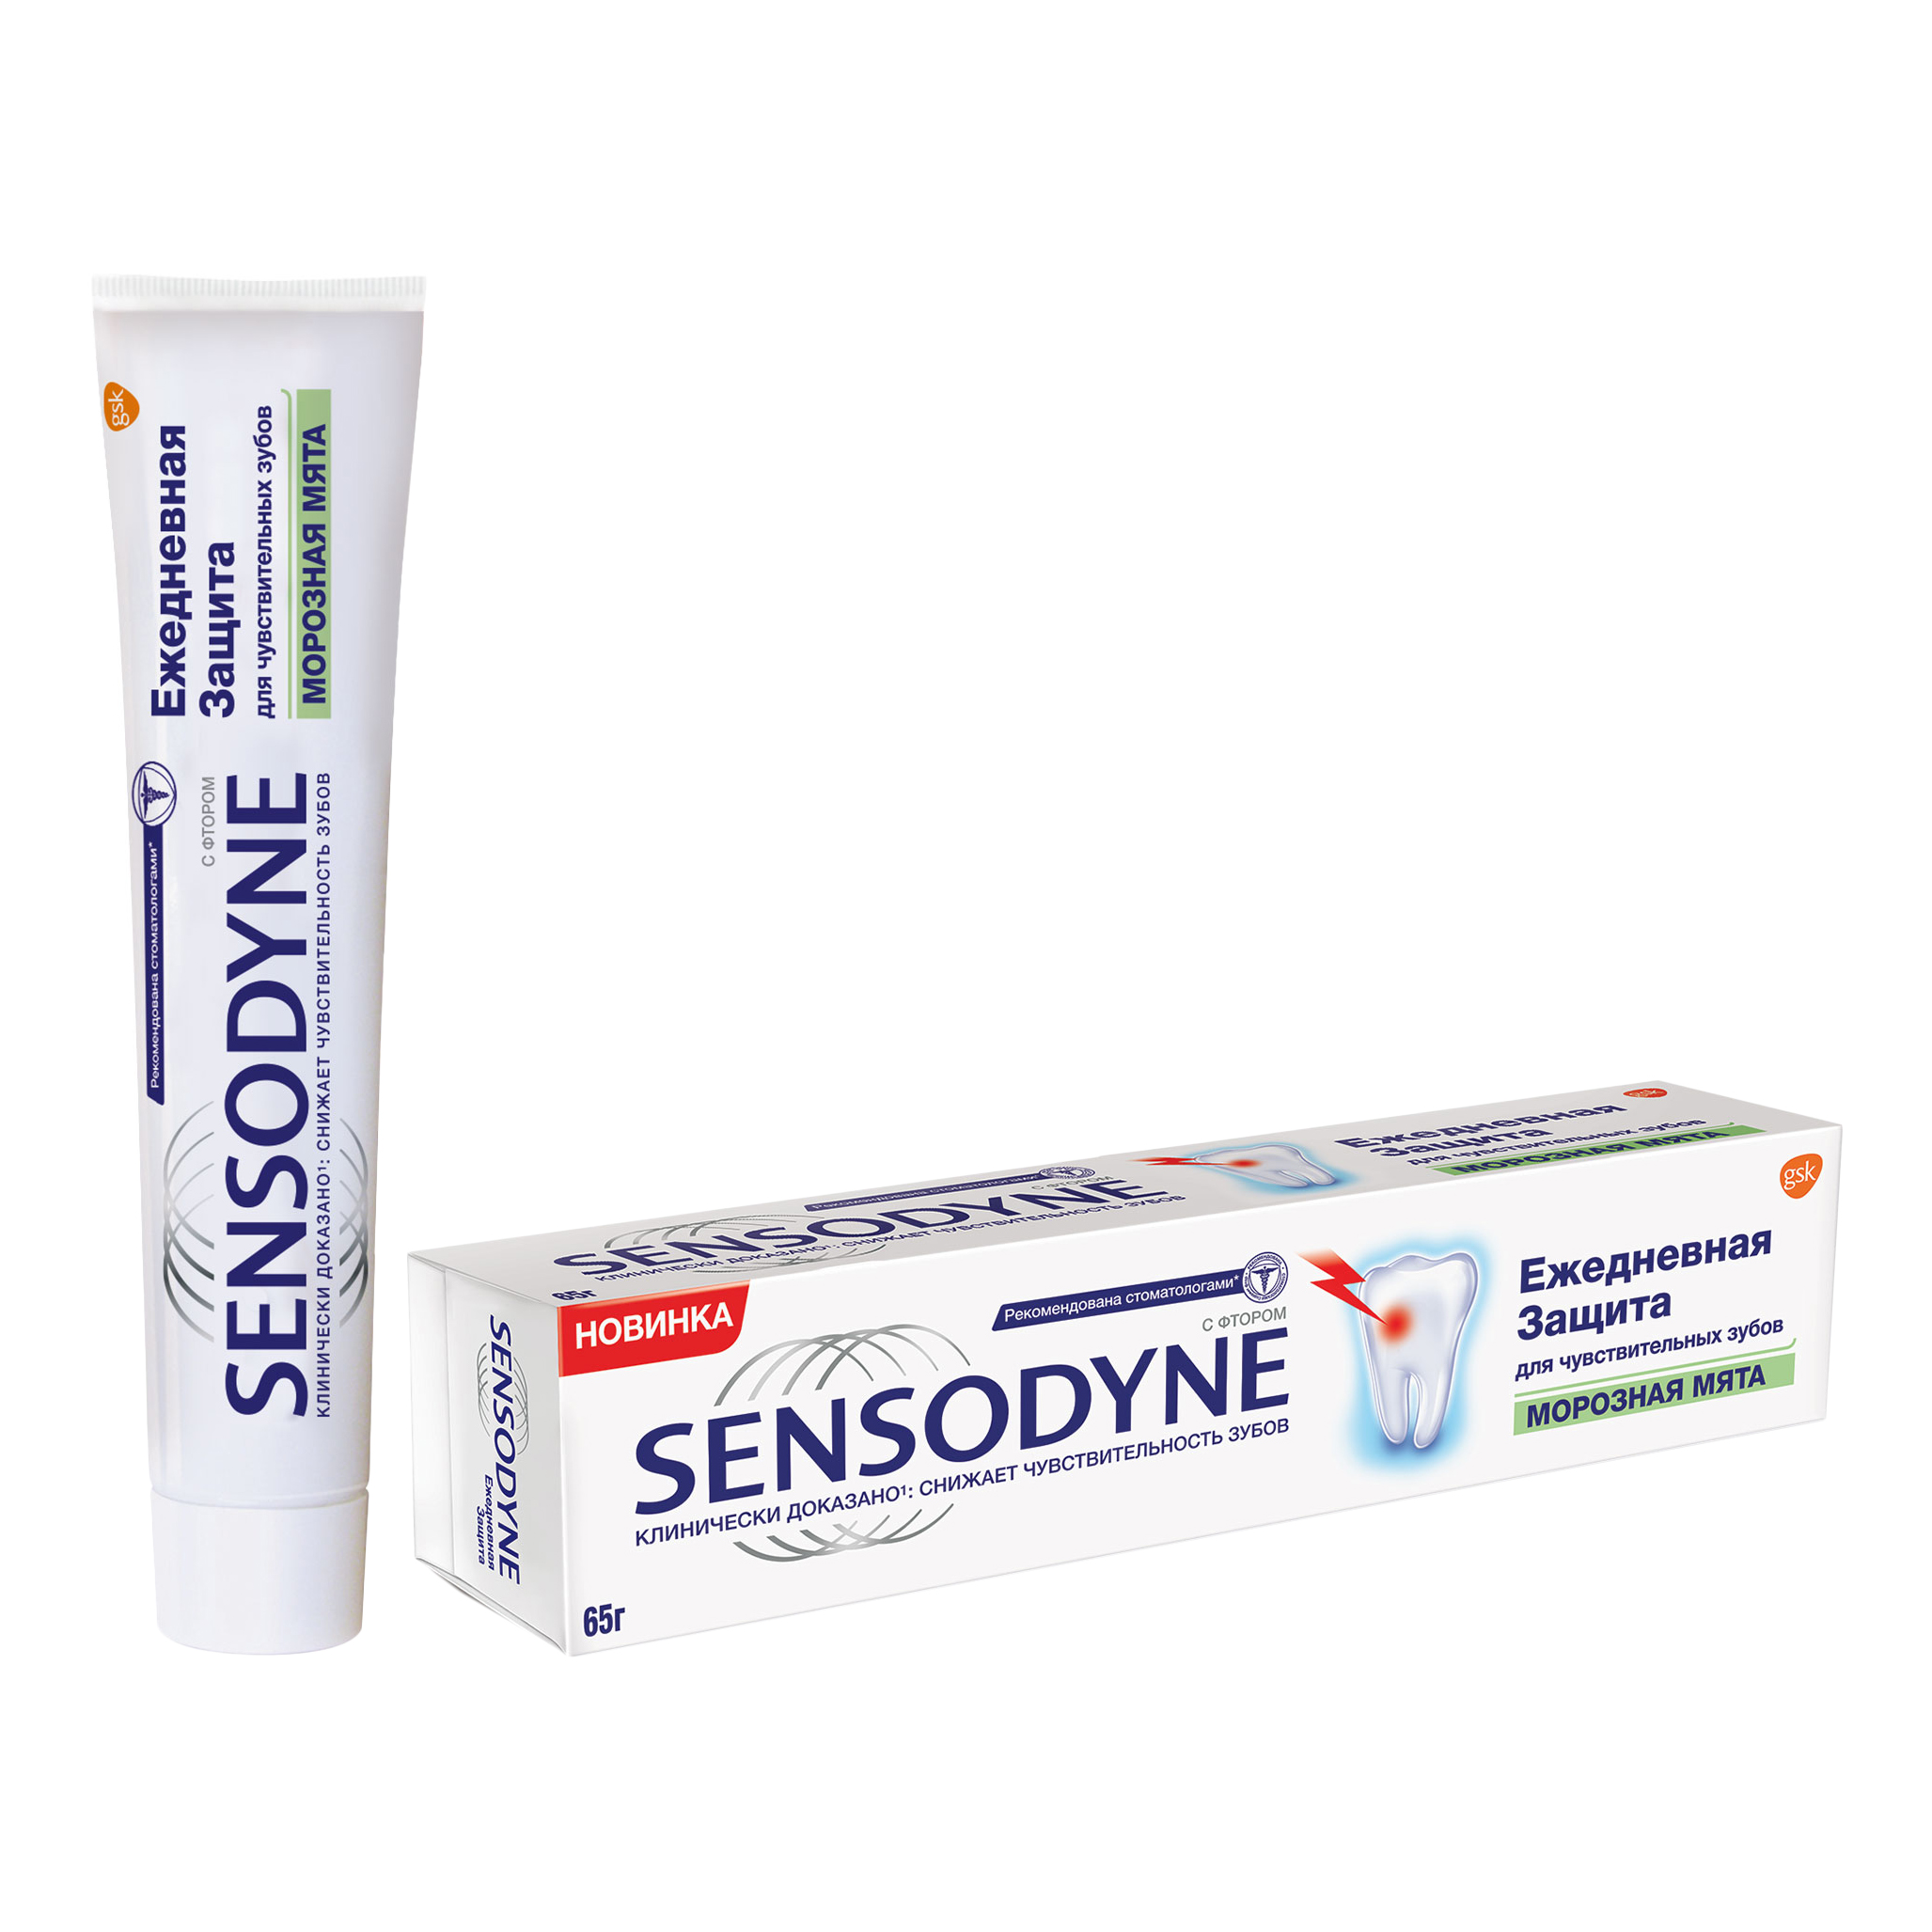 Зубная паста Sensodyne Ежедневная Защита Морозная Мята, для чувствительных зубов, 65 г